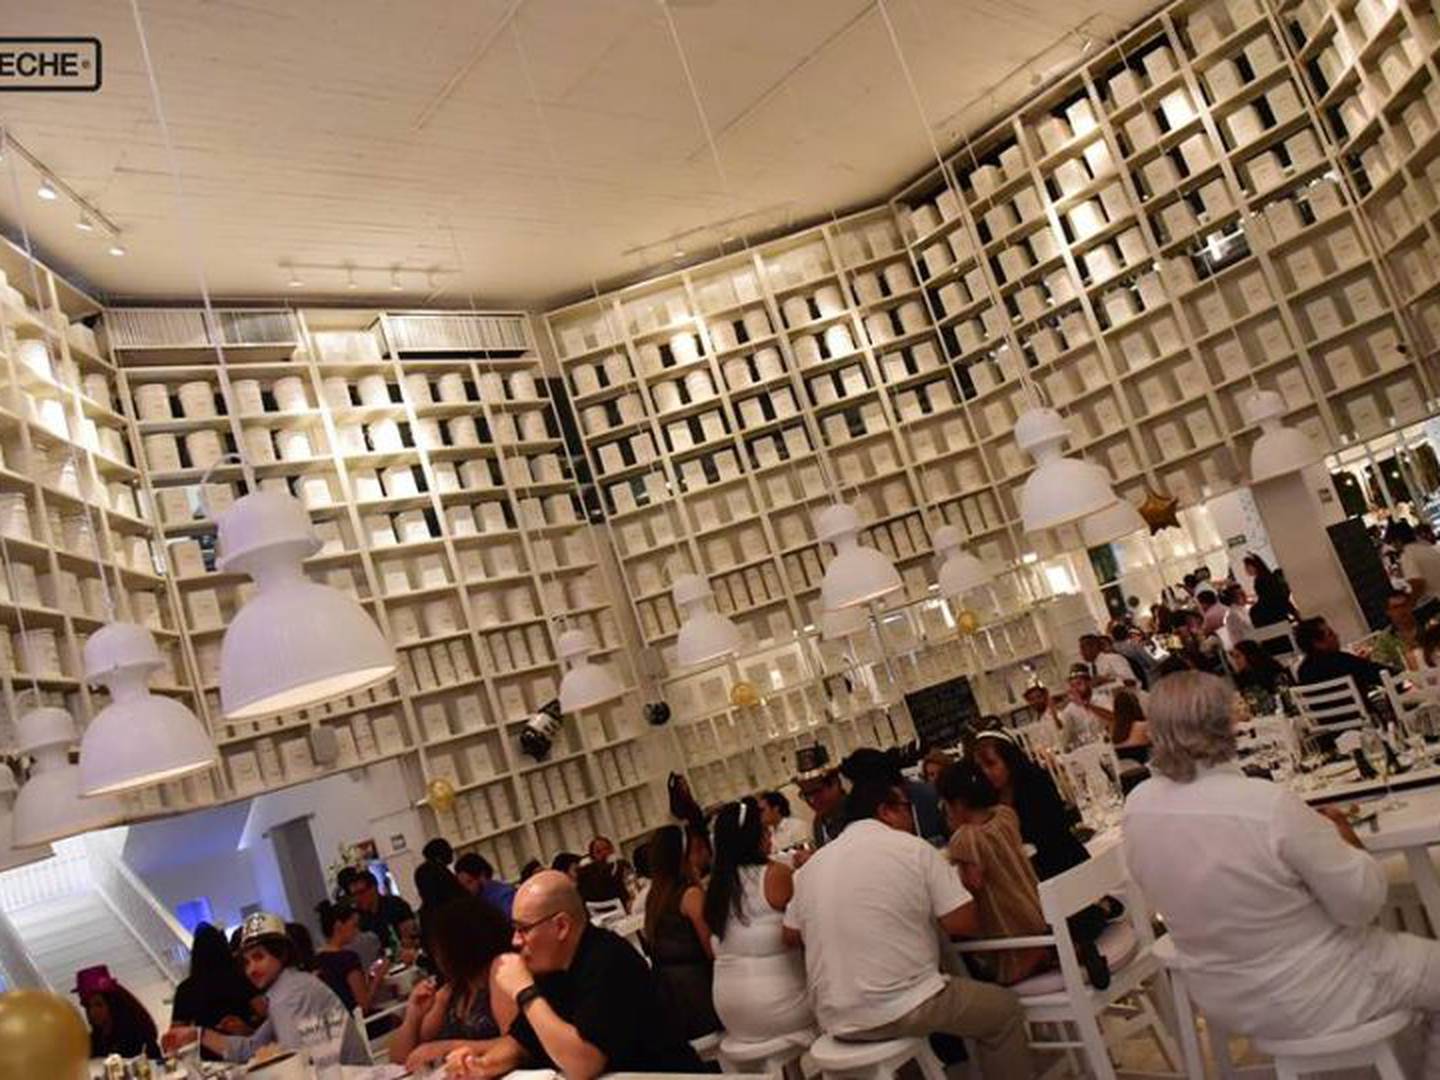 Así es “La Leche”, el restaurante donde sucedió el secuestro de Puerto  Vallarta – Publimetro México